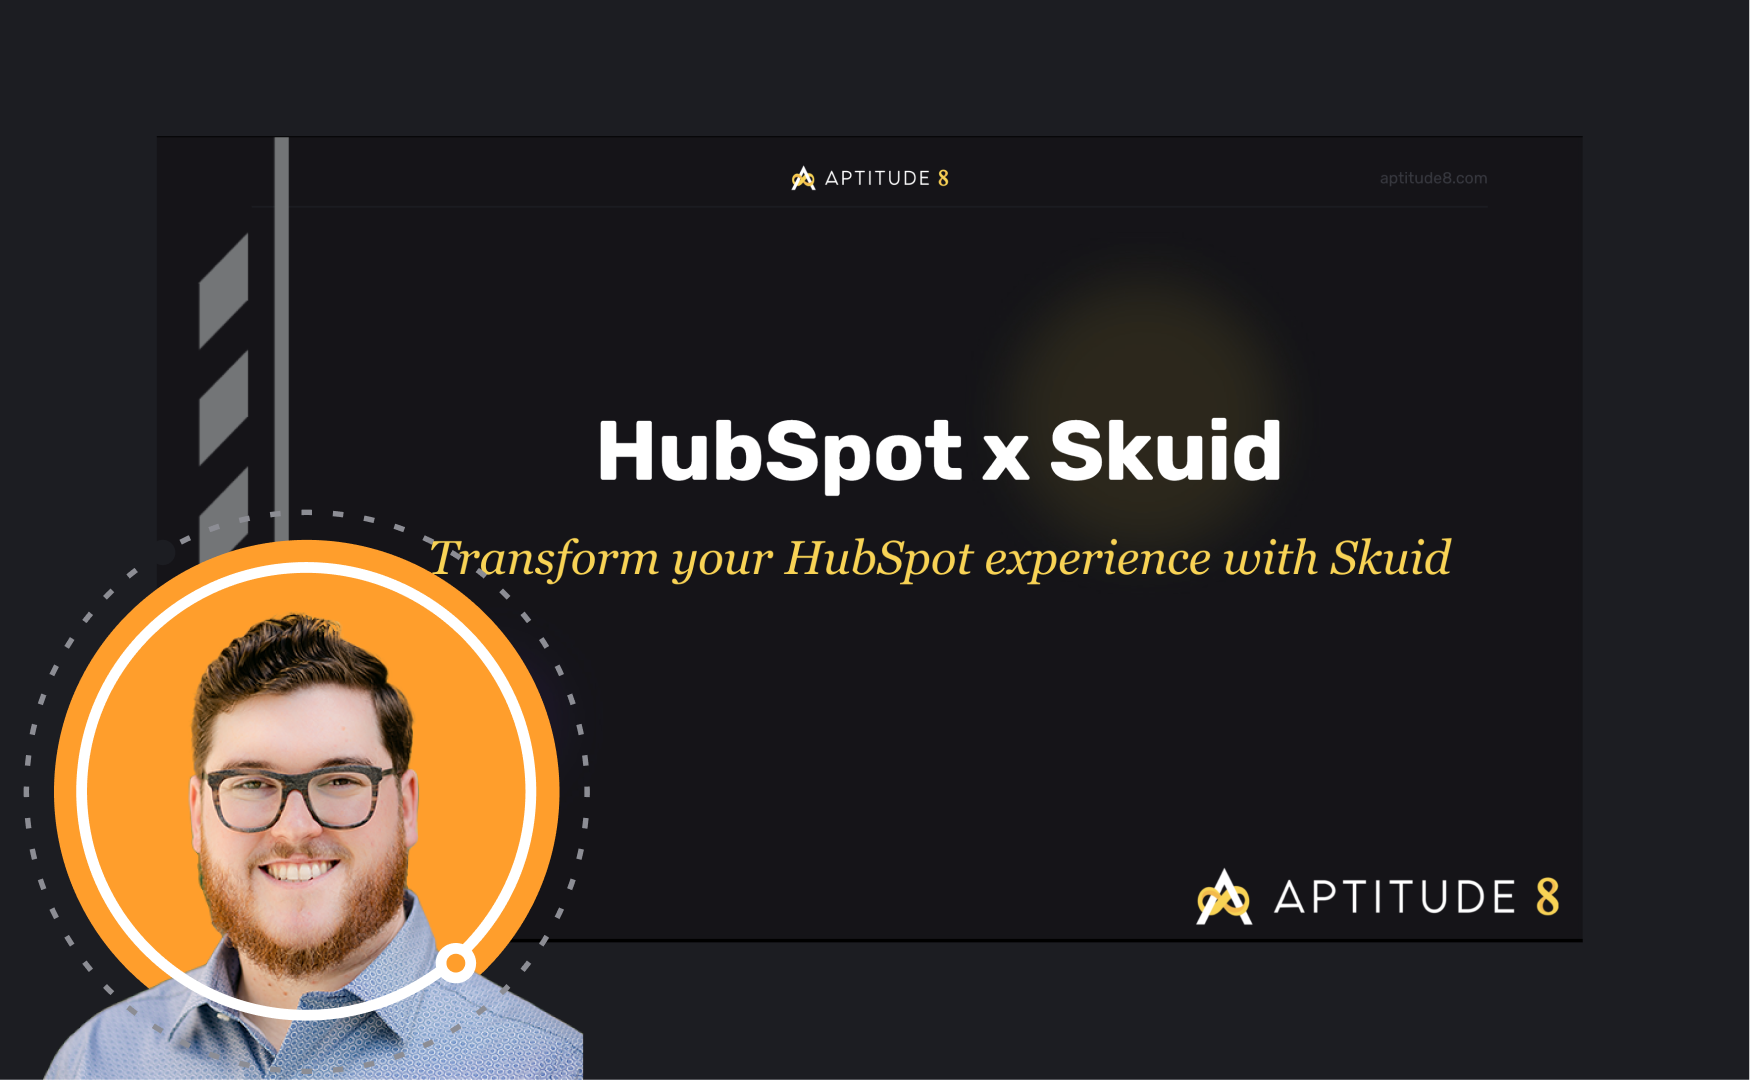 HubSpot x Skuid: Transform your HubSpot experience with Skuid